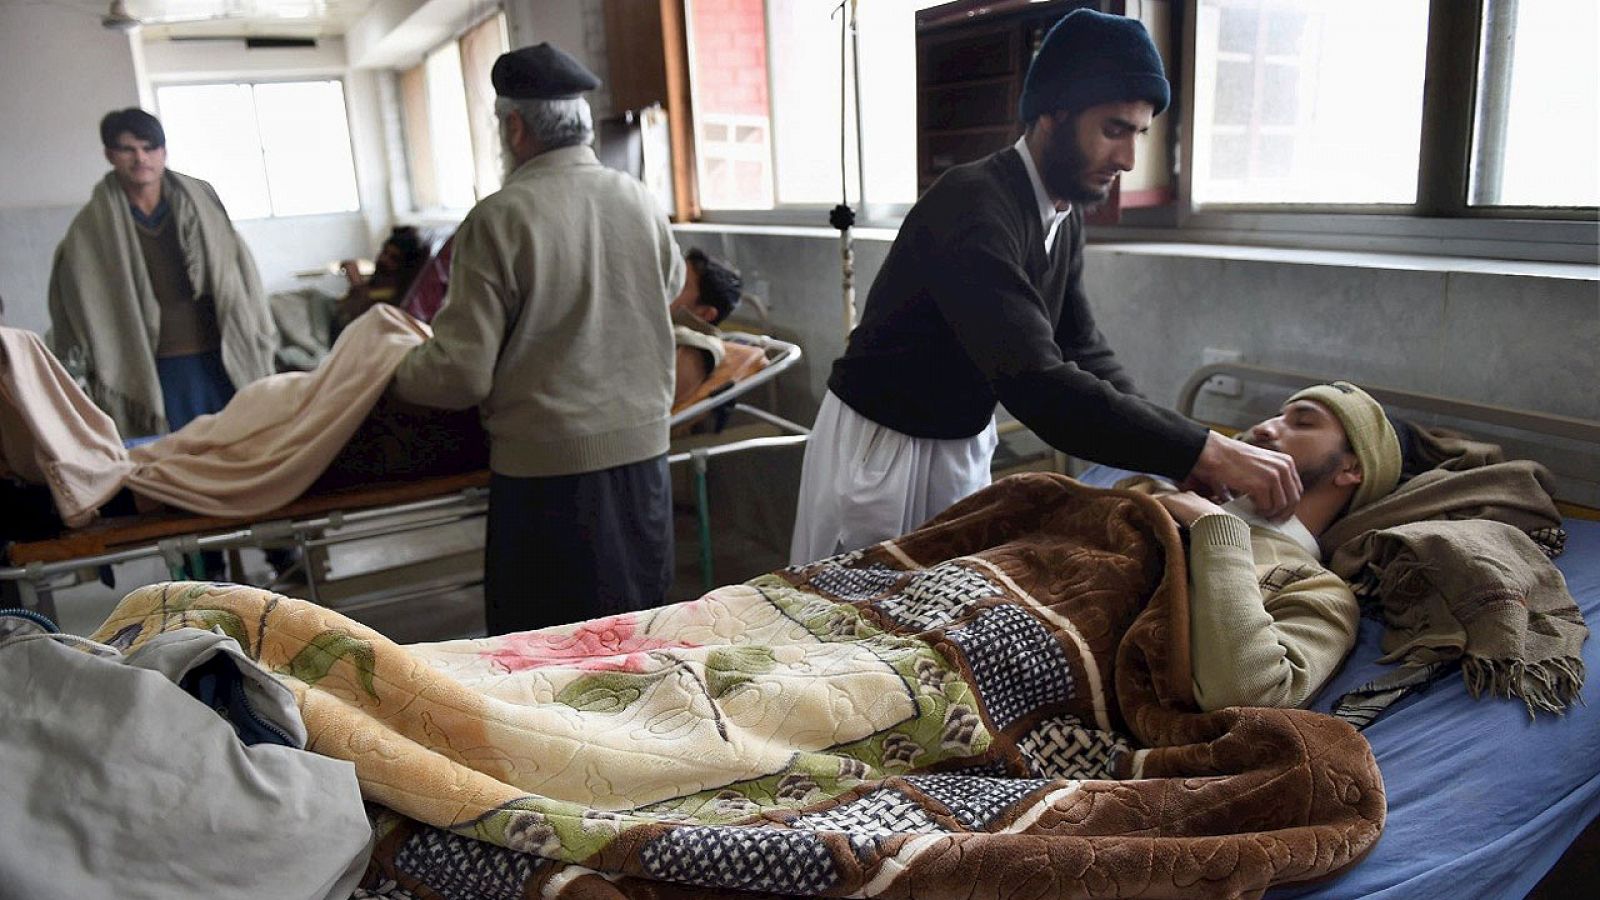 Heridos por el terremoto reciben asistencia en un hospital de Peshawar, en Pakistán, el 26 de diciembre de 2015. AFP PHOTO / A MAJEED